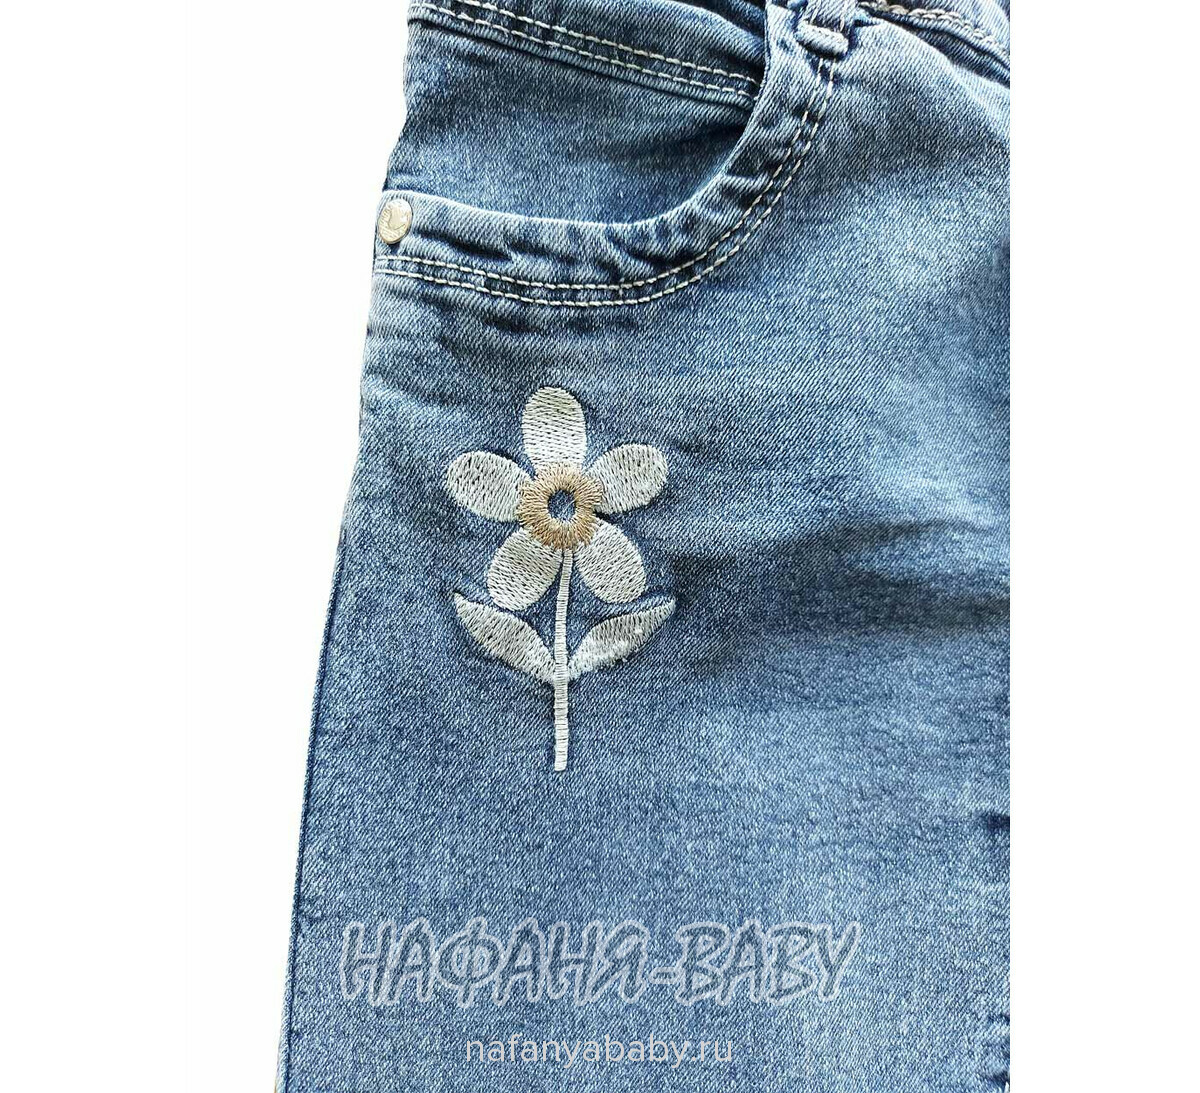 Детские джинсы TATI Jeans арт: 9267, 3-7 лет, цвет синий, оптом Турция